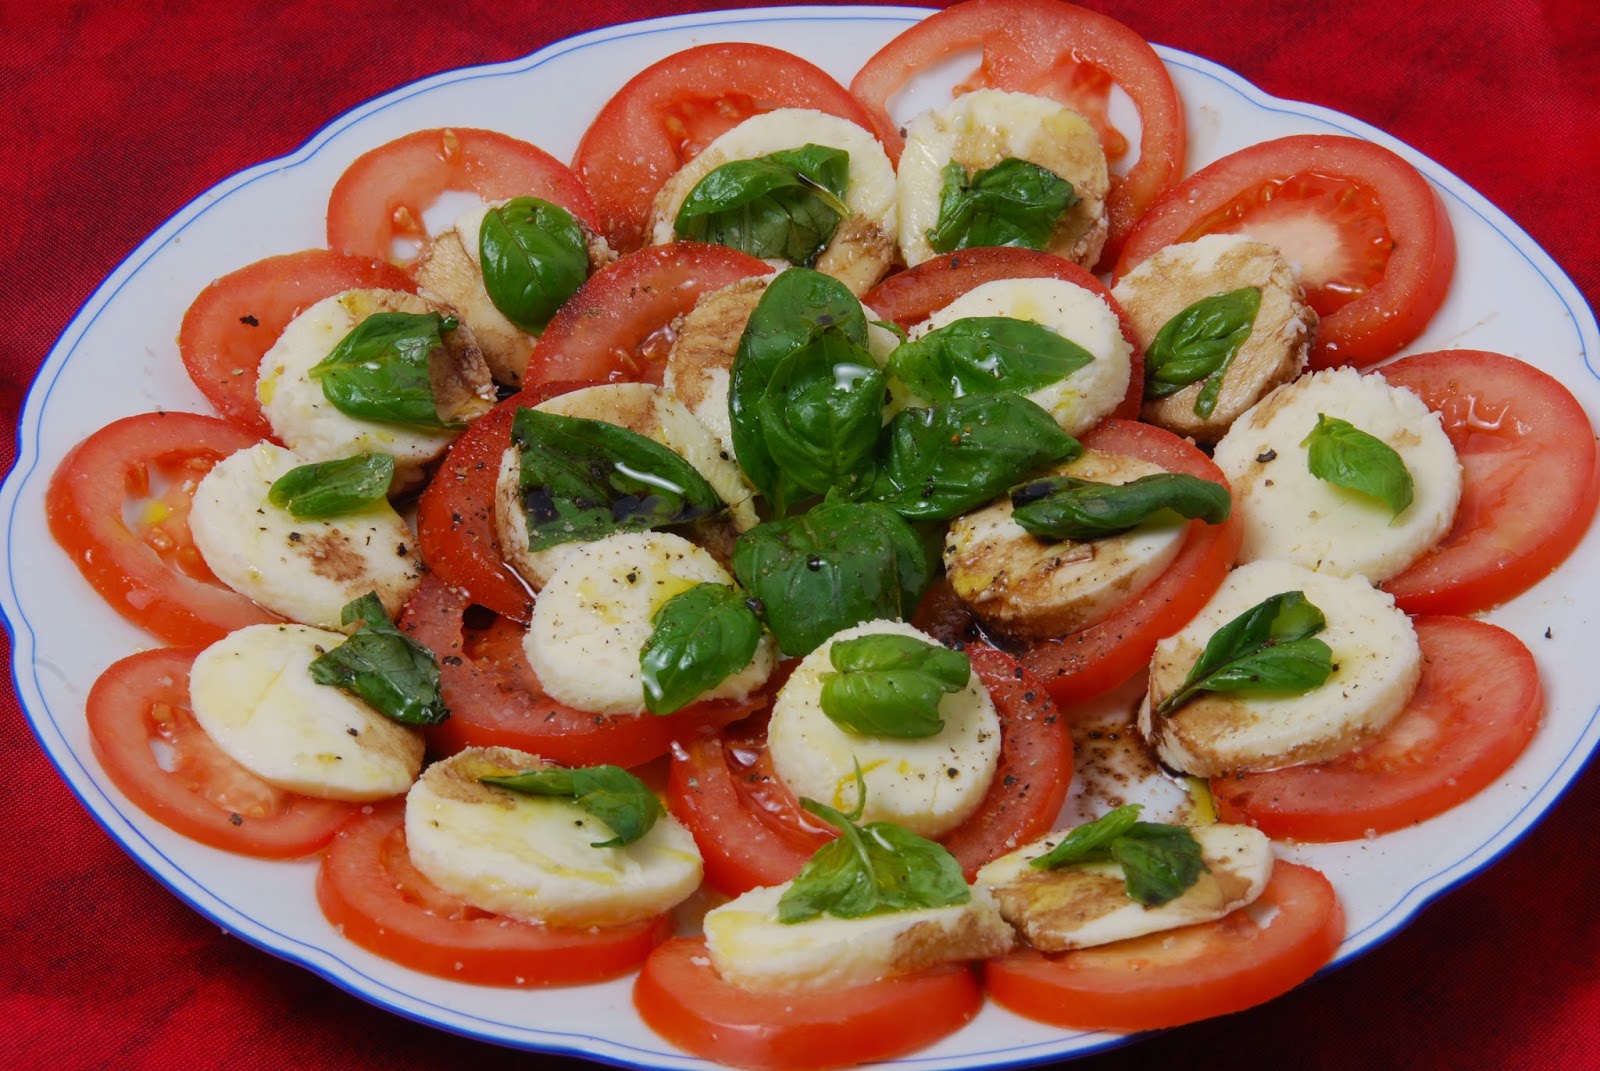 Tomaten Mozzarella Salat - Paradicsom-Mozzarella saláta | Koche es nach ...